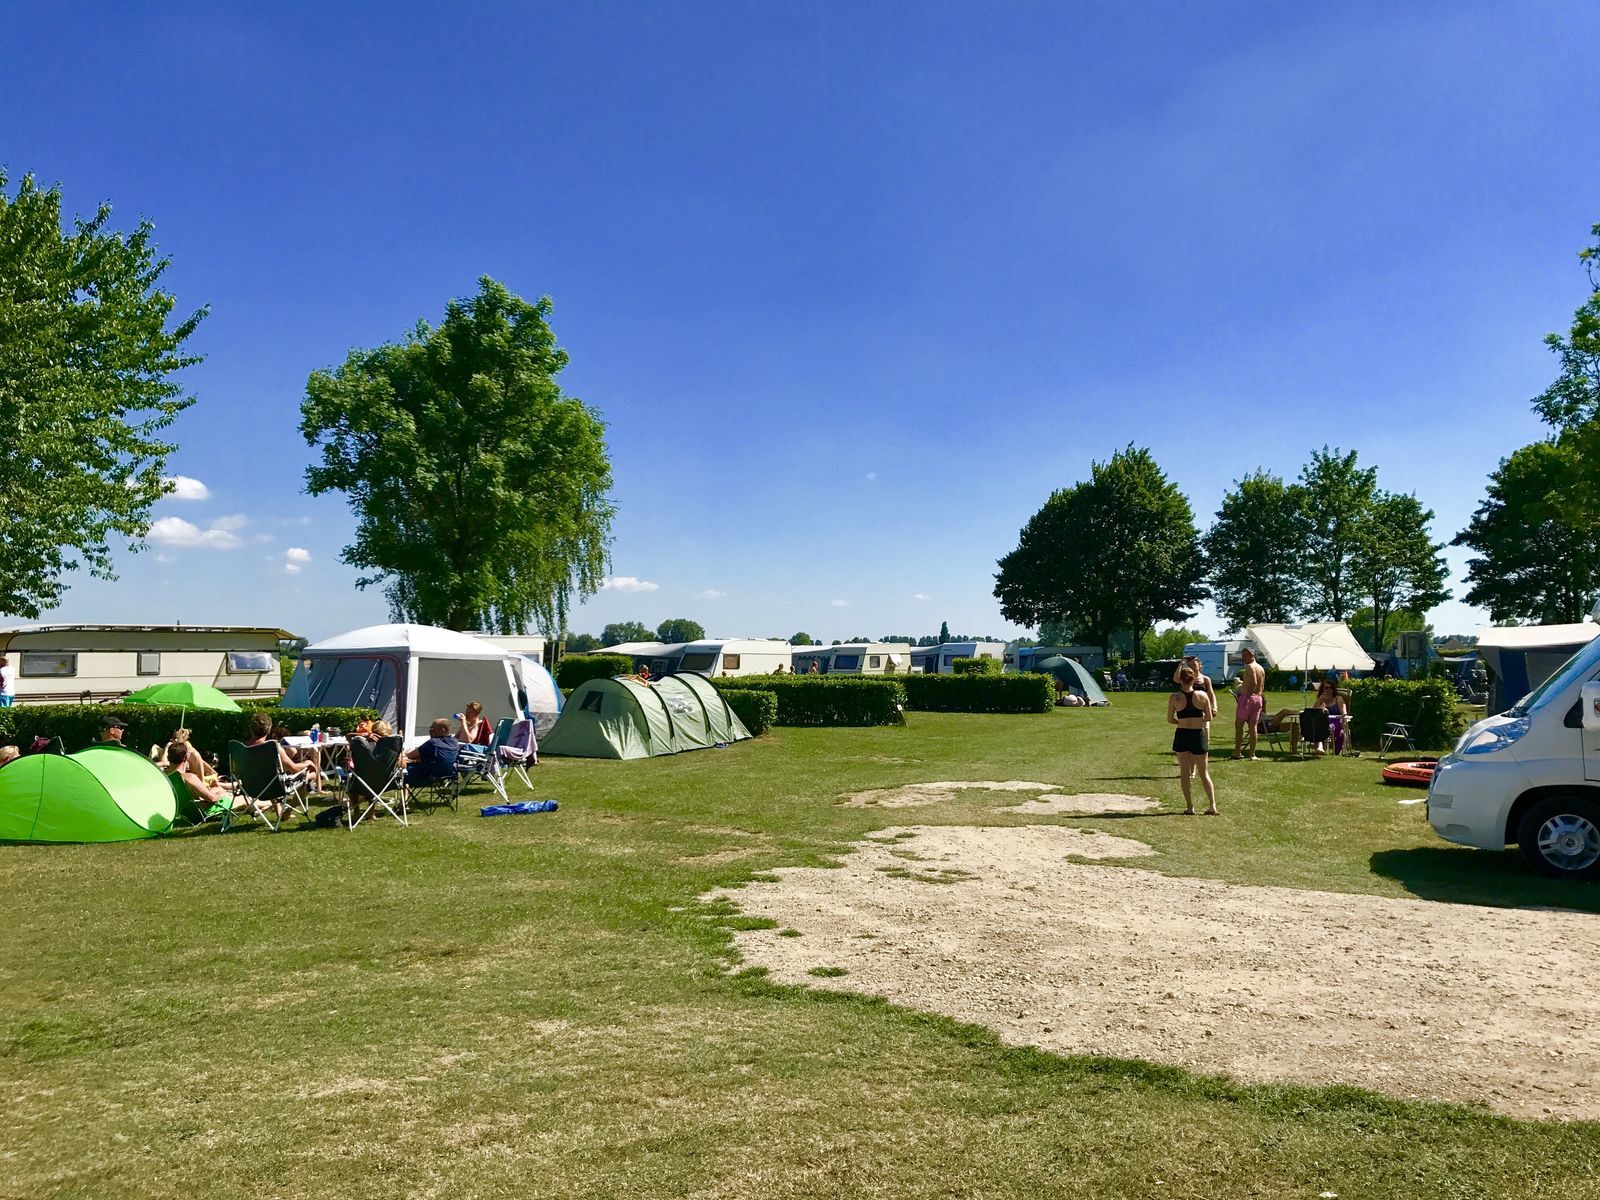 Camping-Stellplatz auf dem Feld am äußeren Ring